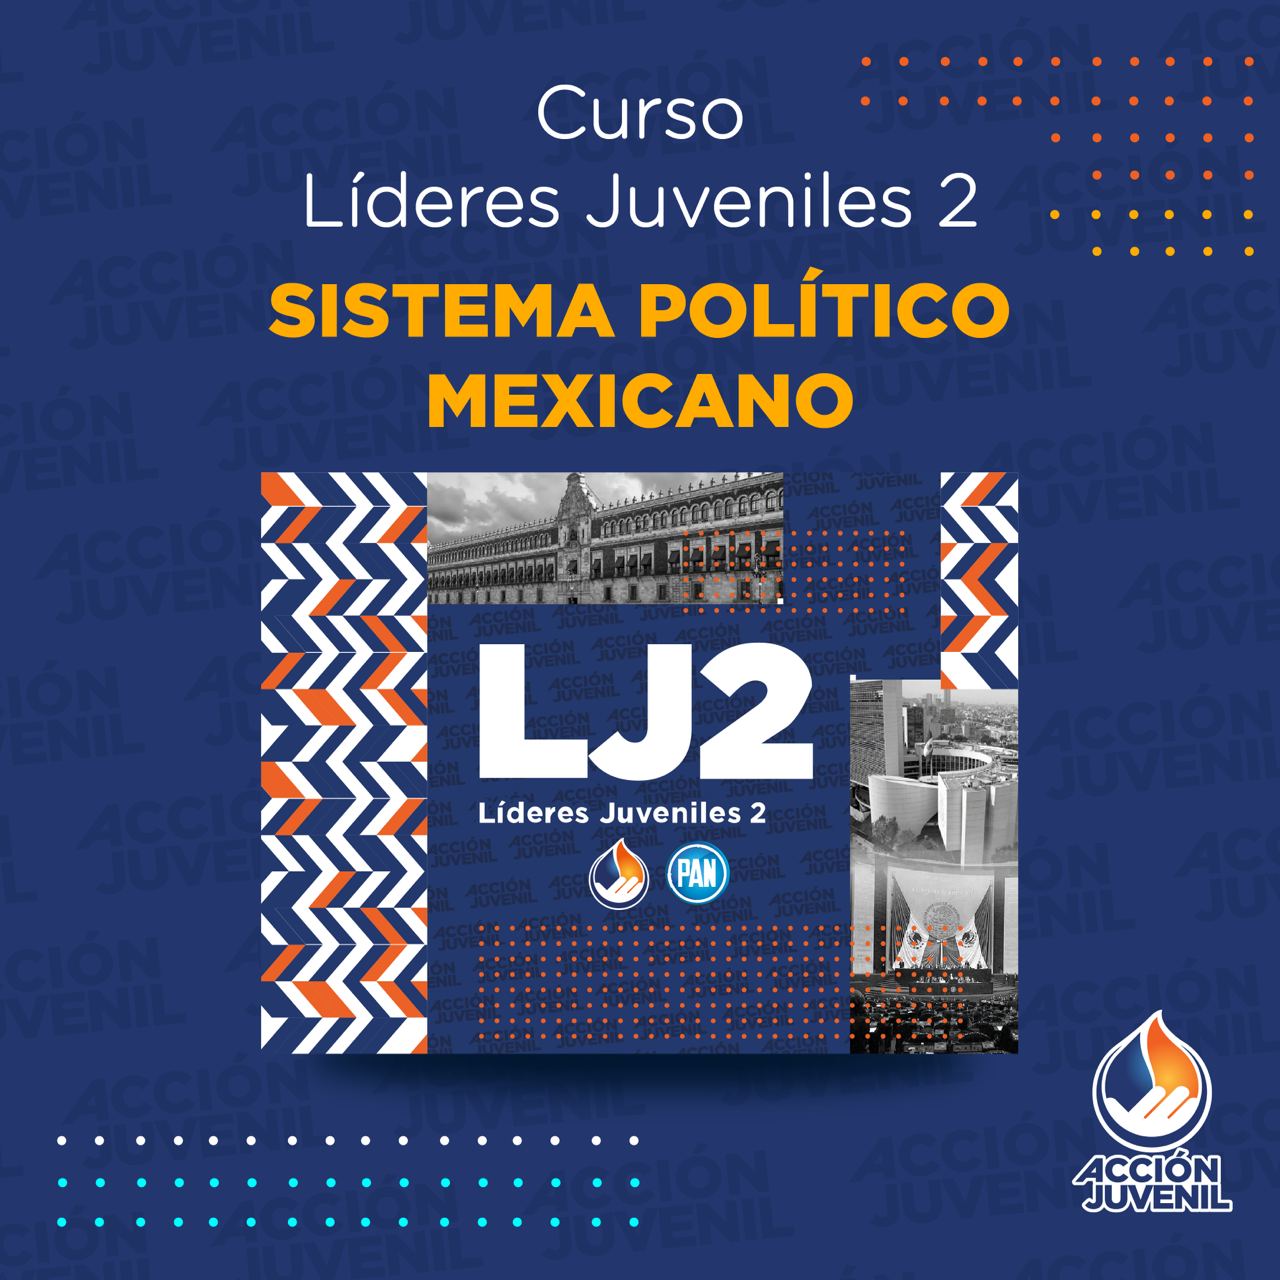 Curso Líderes Juveniles 2 Sistema Político Mexicano Naucalpan, MEX 30/07/22